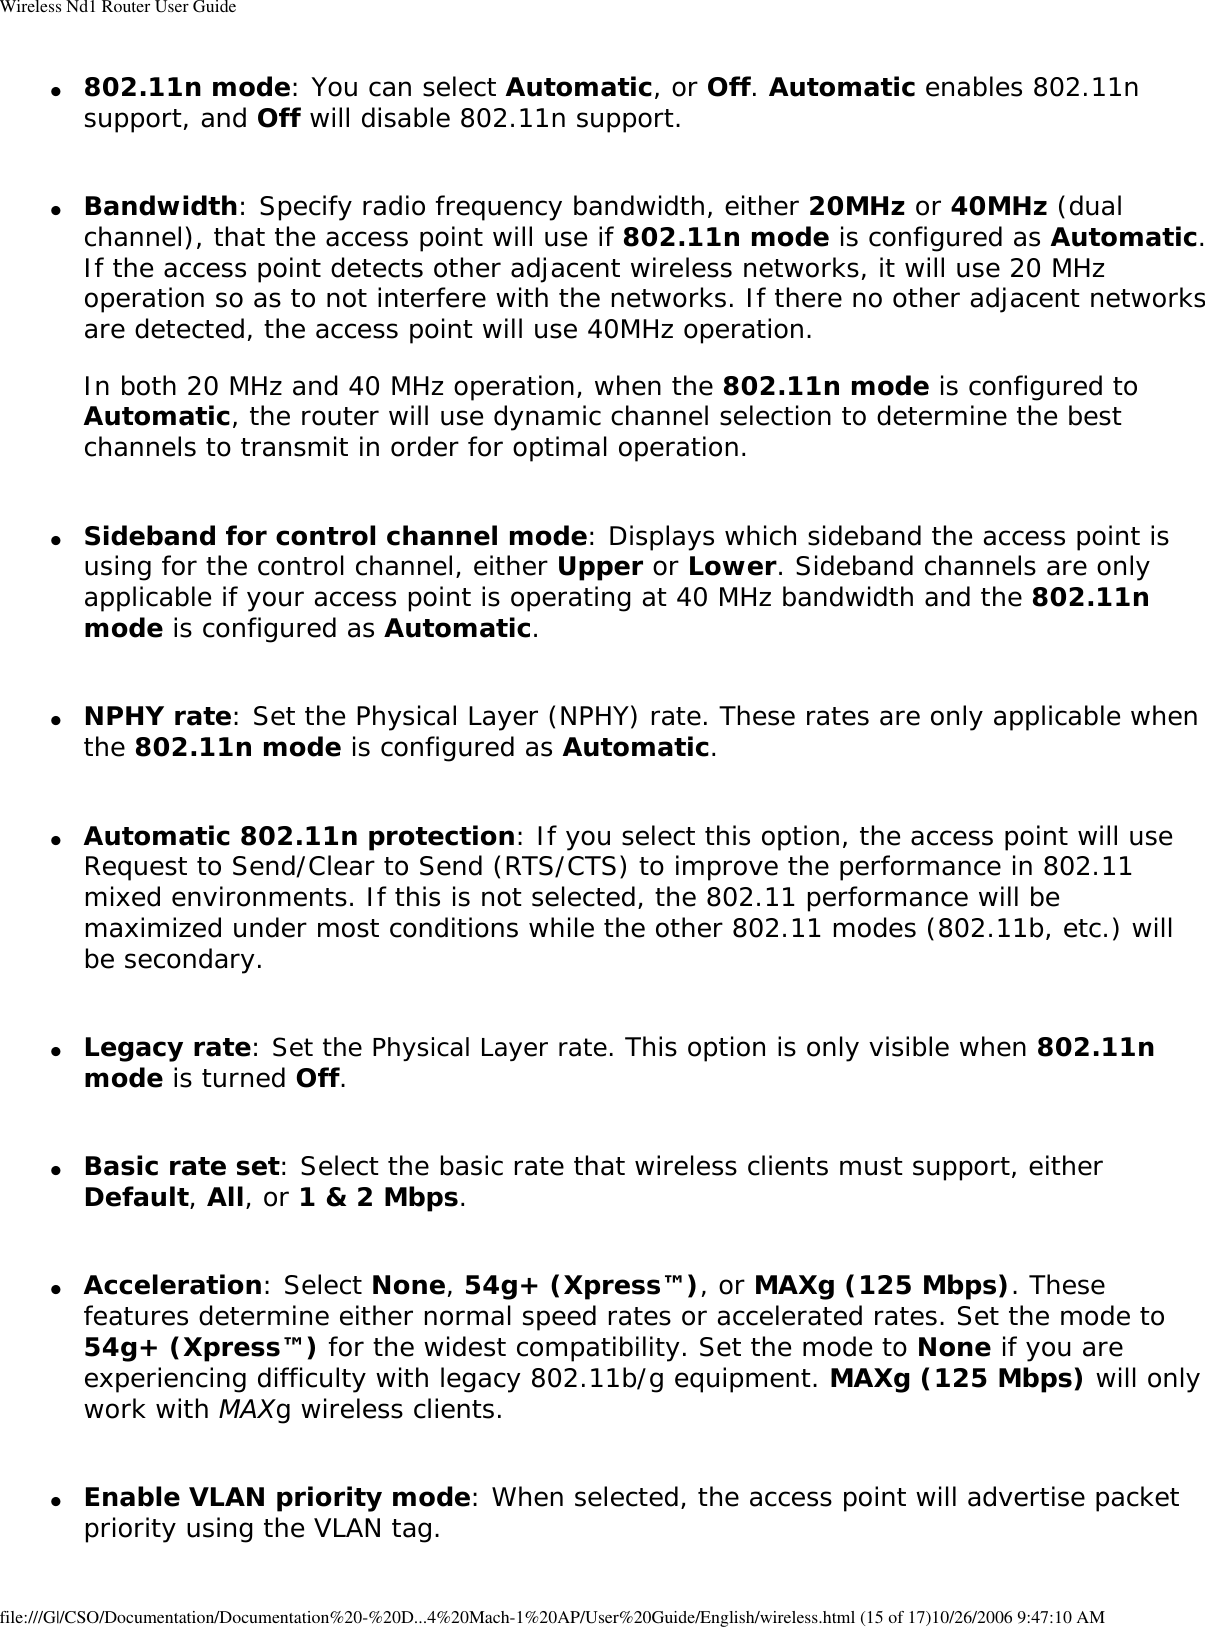 Page 51 of GemTek Technology A950630GN USRobotics Wireless Nd1 Access Point User Manual Manual